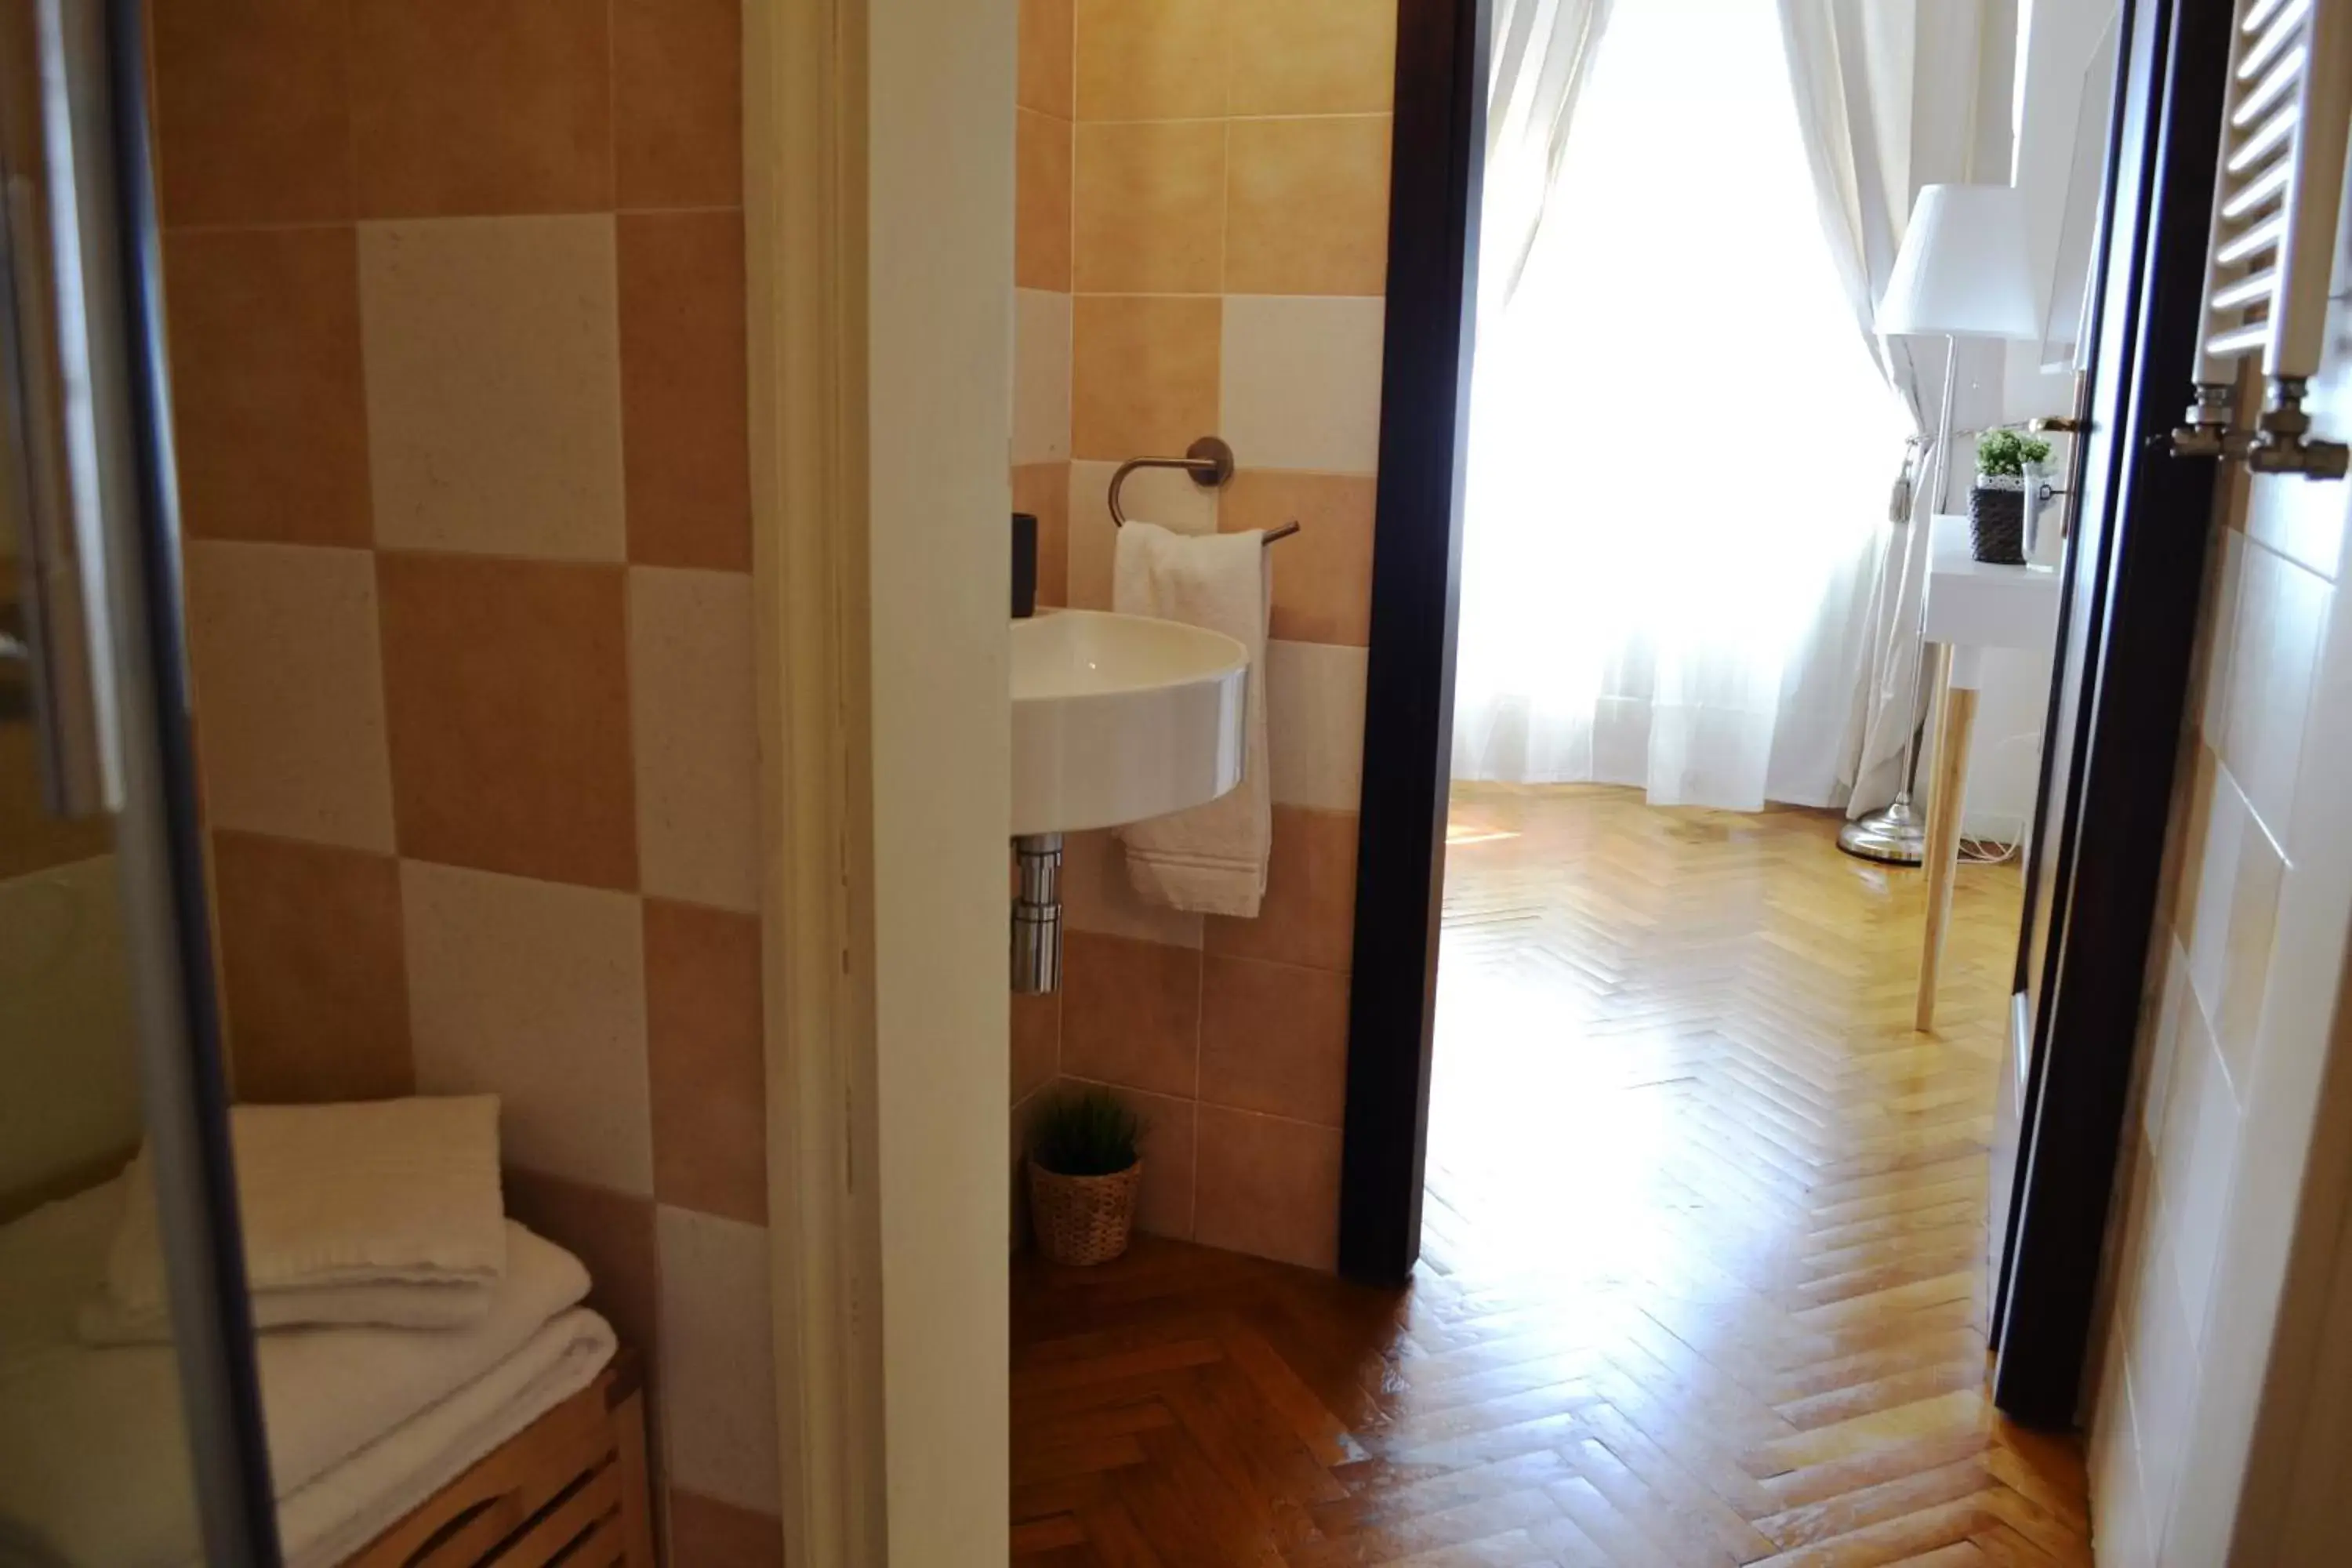 Bathroom in Domus Duomo